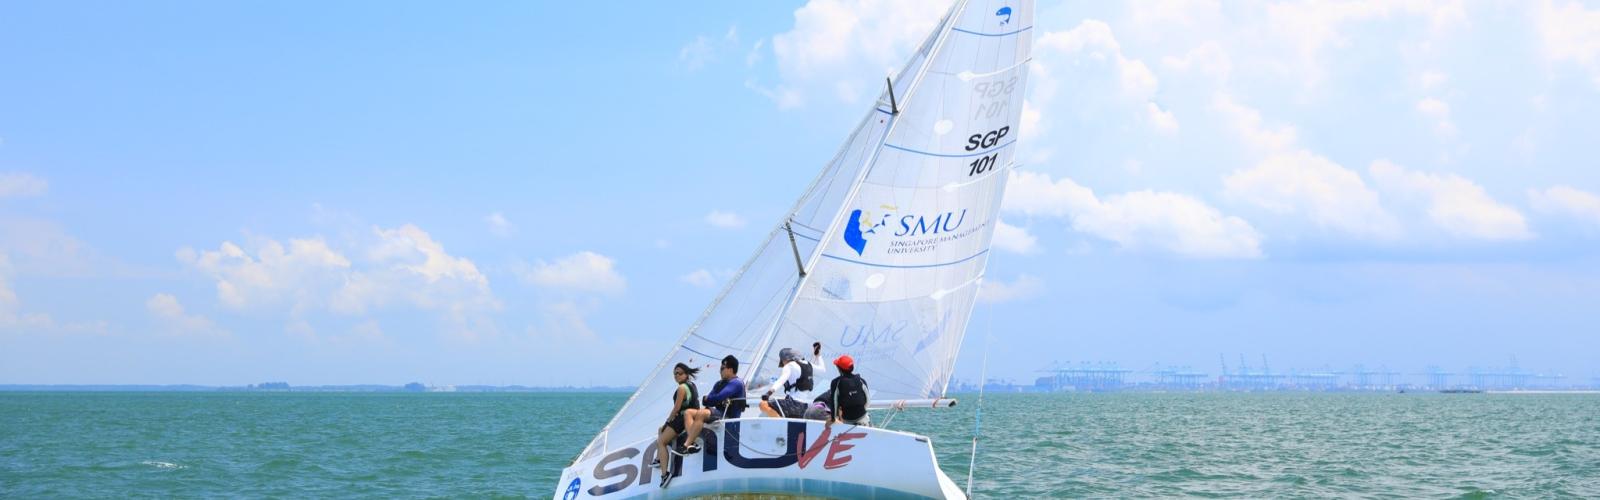 SMU Sailing Banner